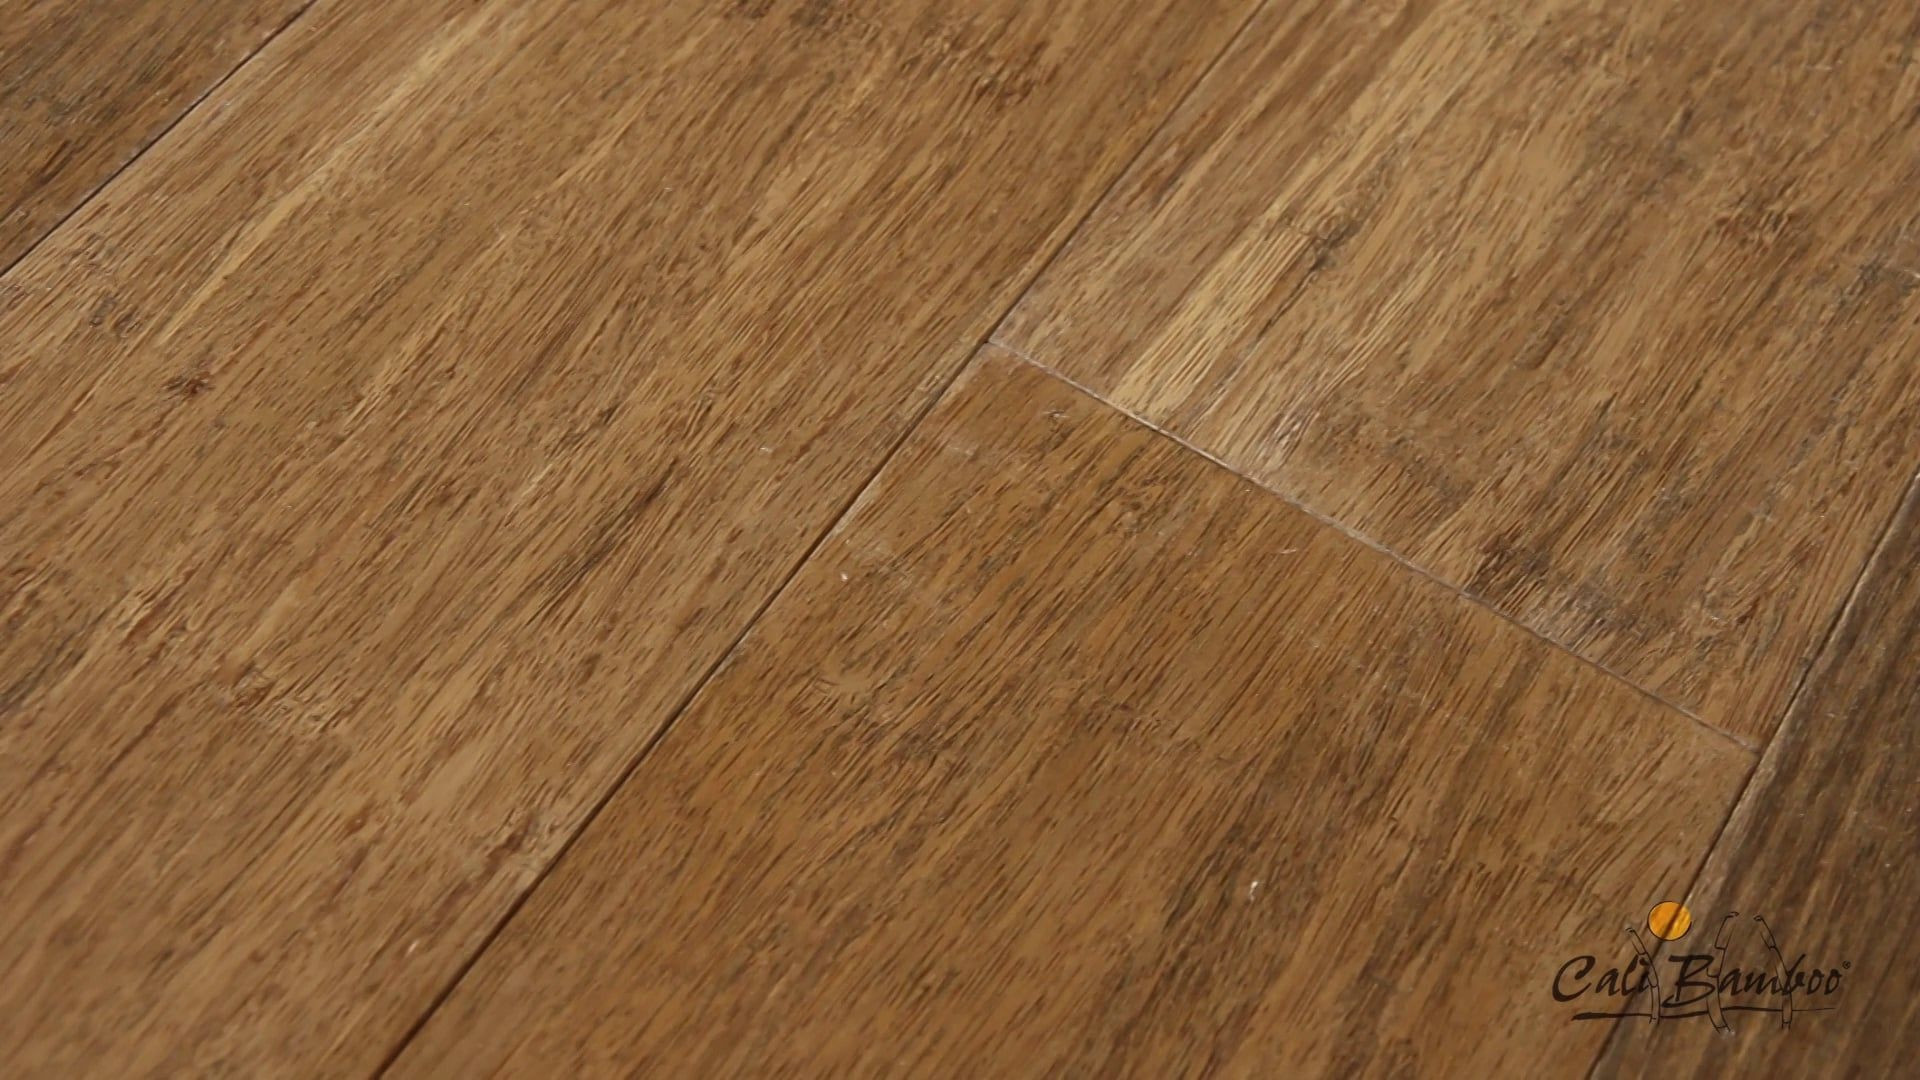 28 Unique Hardwood Floor Cleaner Recipe 2022 free download hardwood floor cleaner recipe of 37 best unfinished bamboo floor stock flooring design ideas in unfinished bamboo floor unique bamboo hardwood flooring naturally bamboo flooring carbonised s